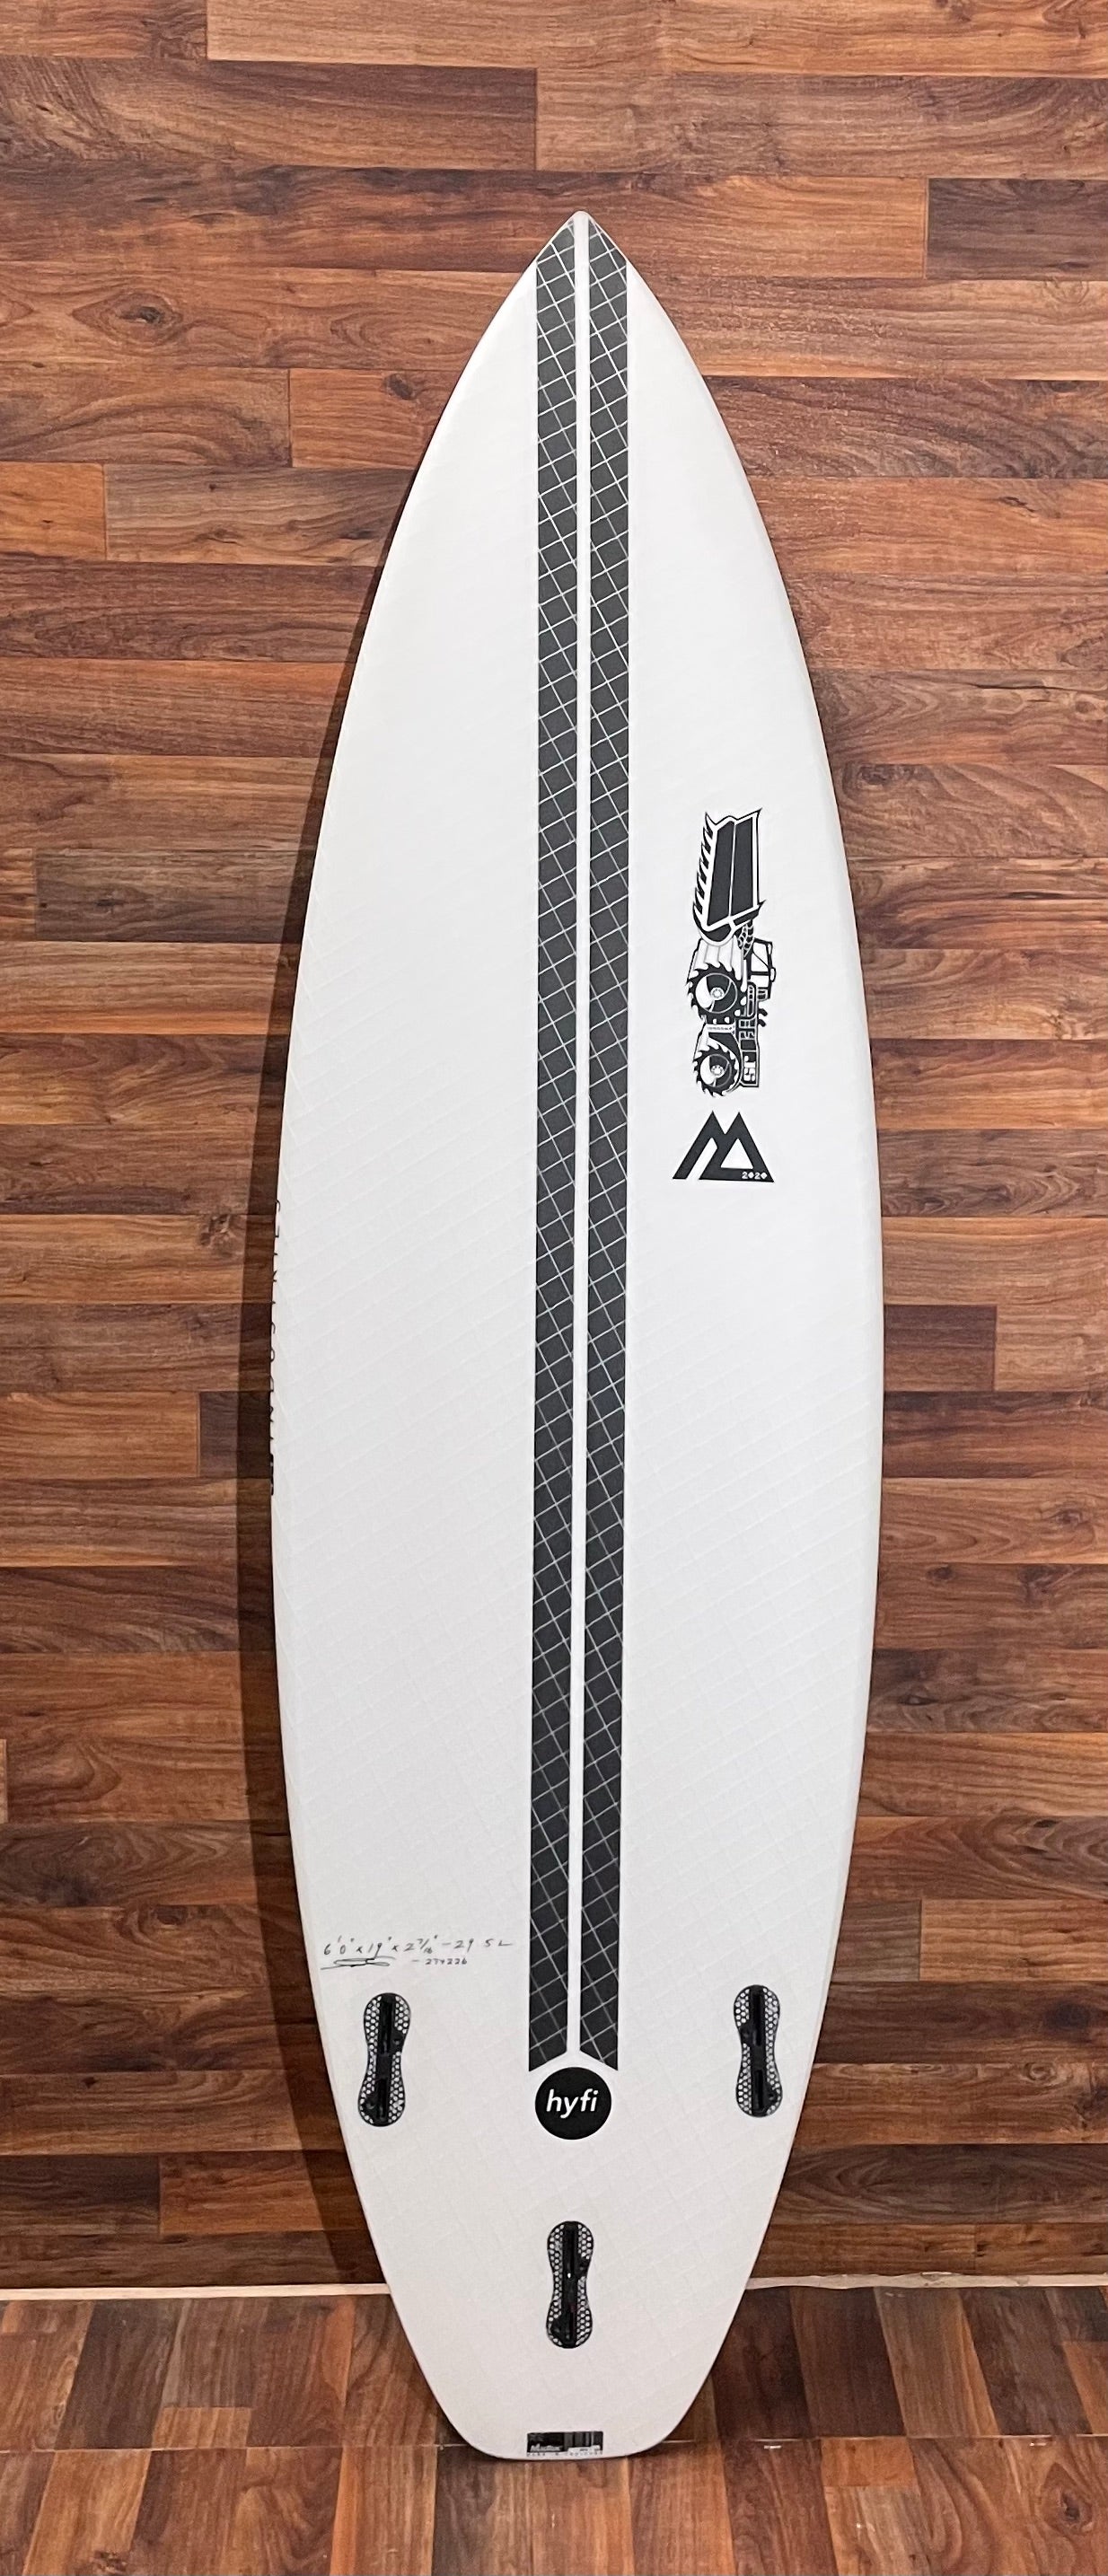 JS MONSTA HY-FI 6'0" SURFBOARD